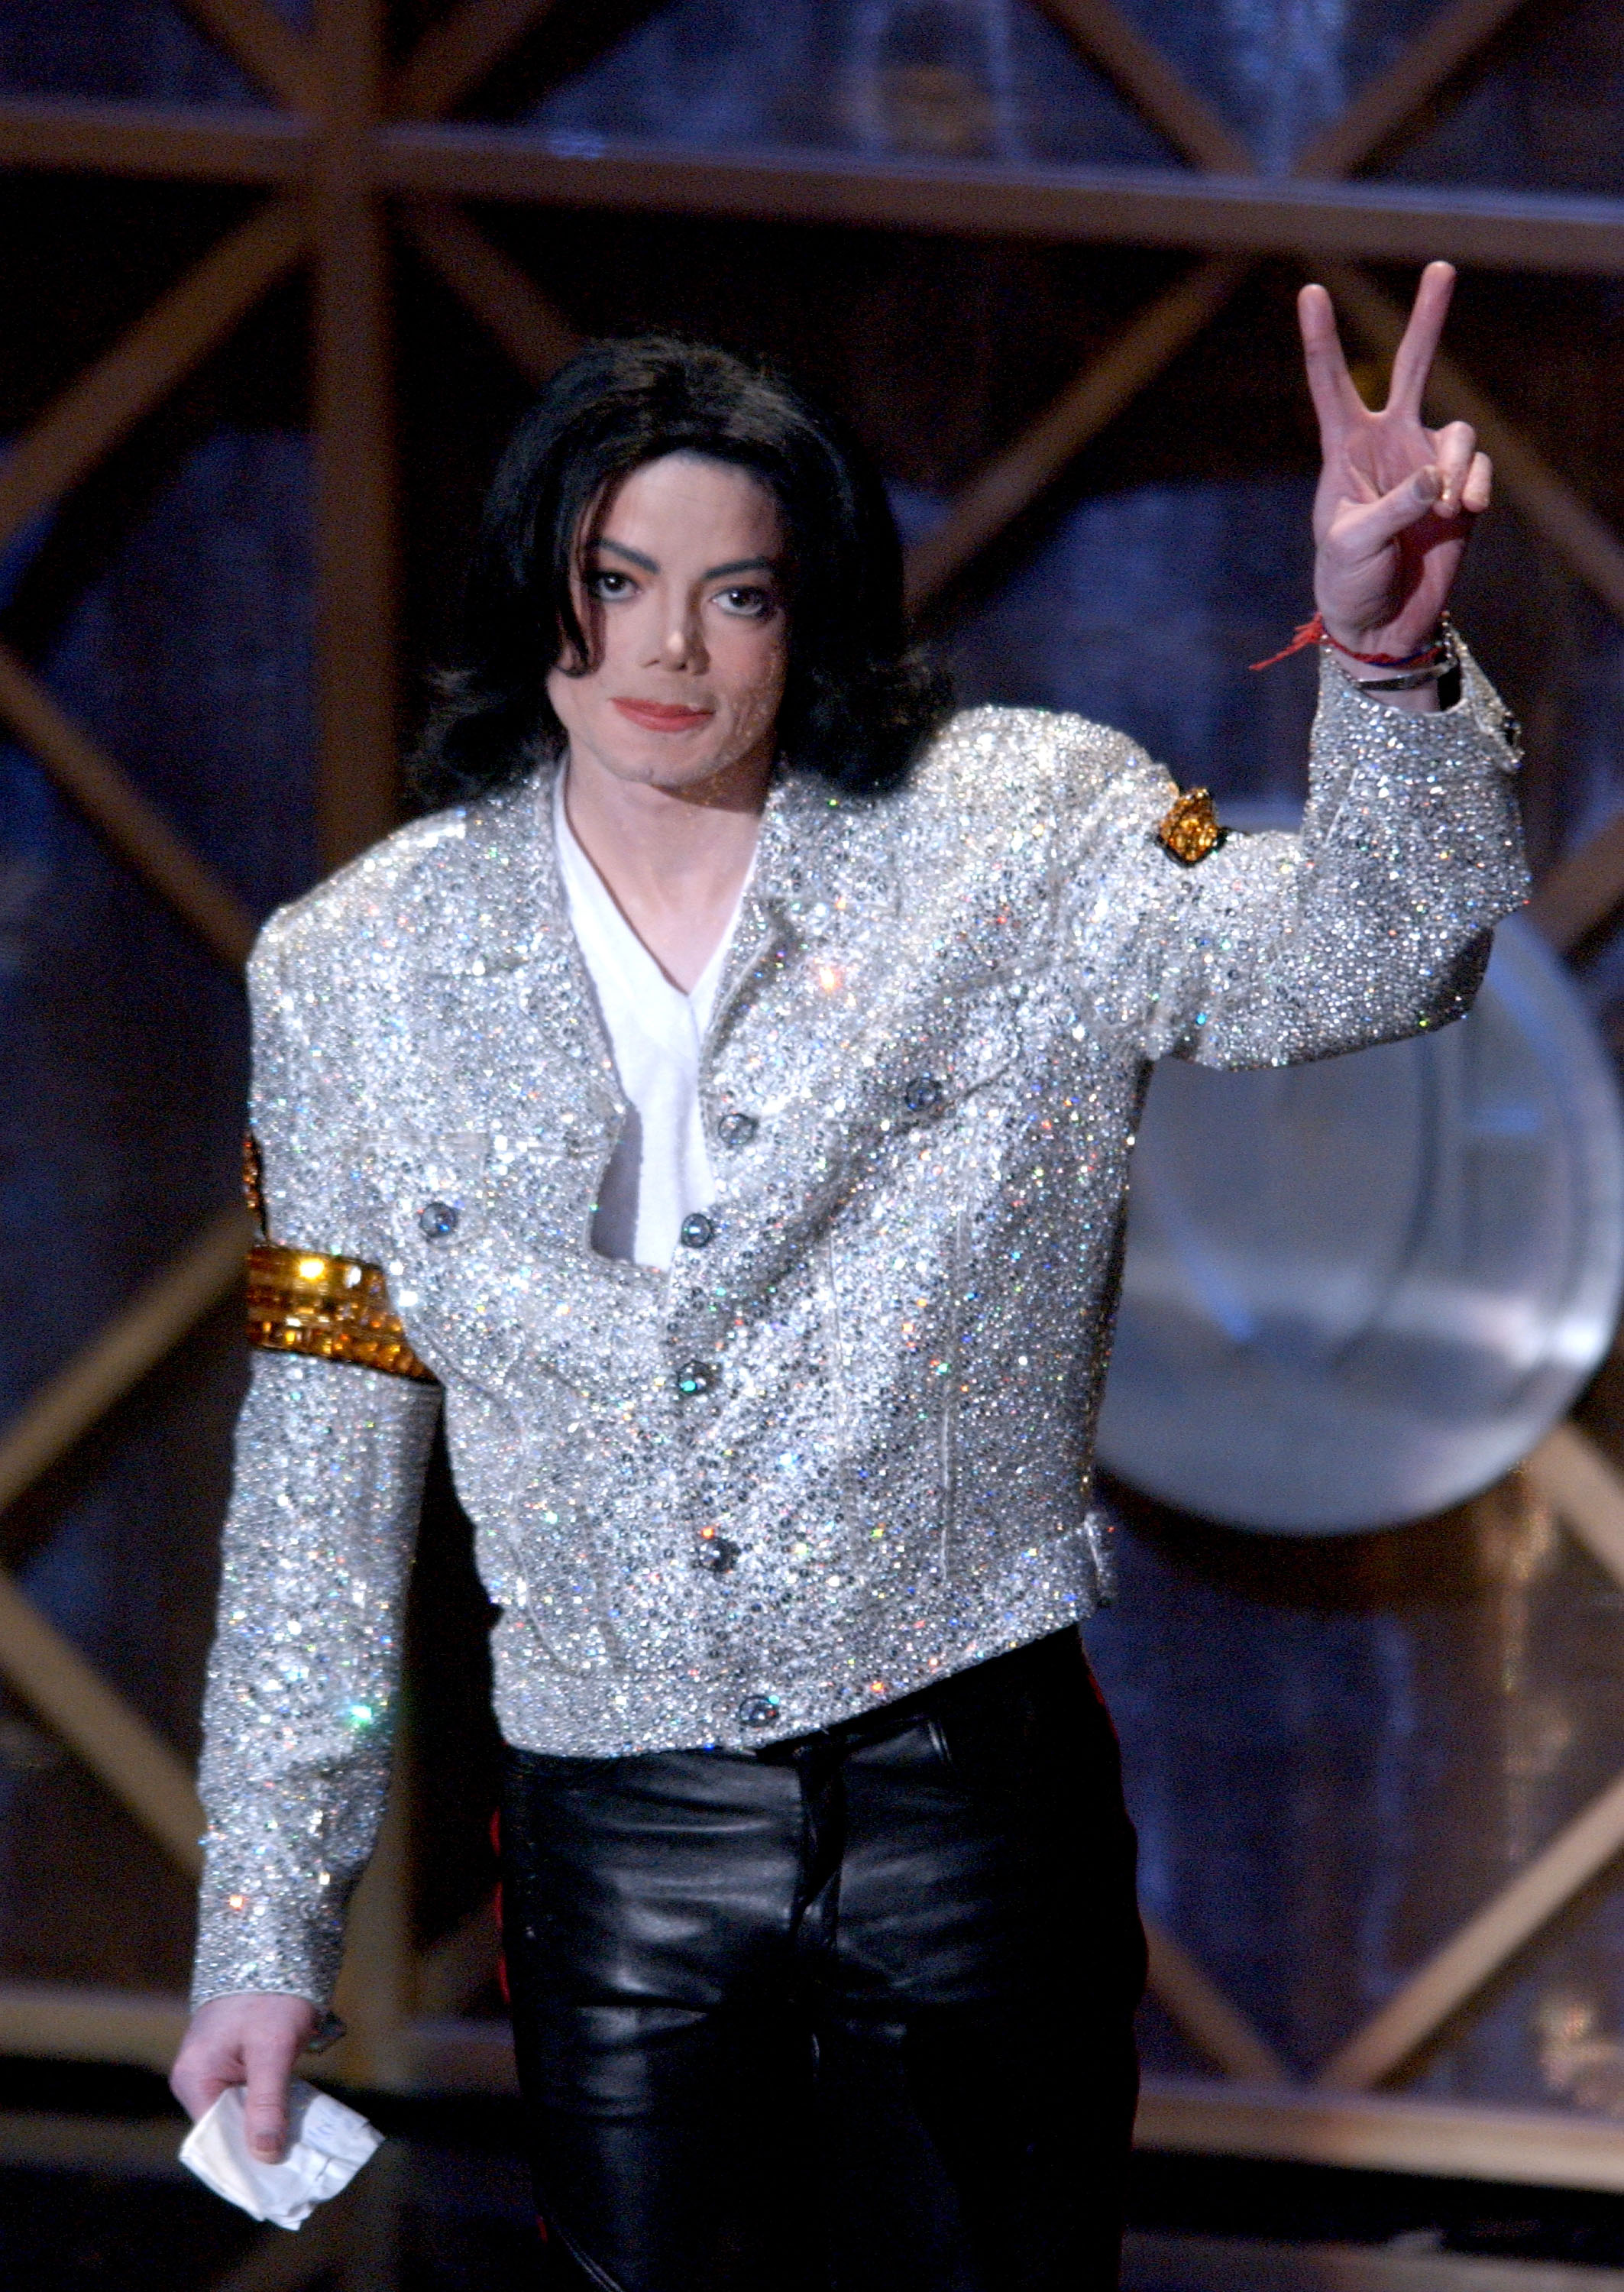 Michael Jackson en los 29th Annual American Music Awards el 9 de enero de 2002, en Los Angeles, California | Fuente: Getty Images